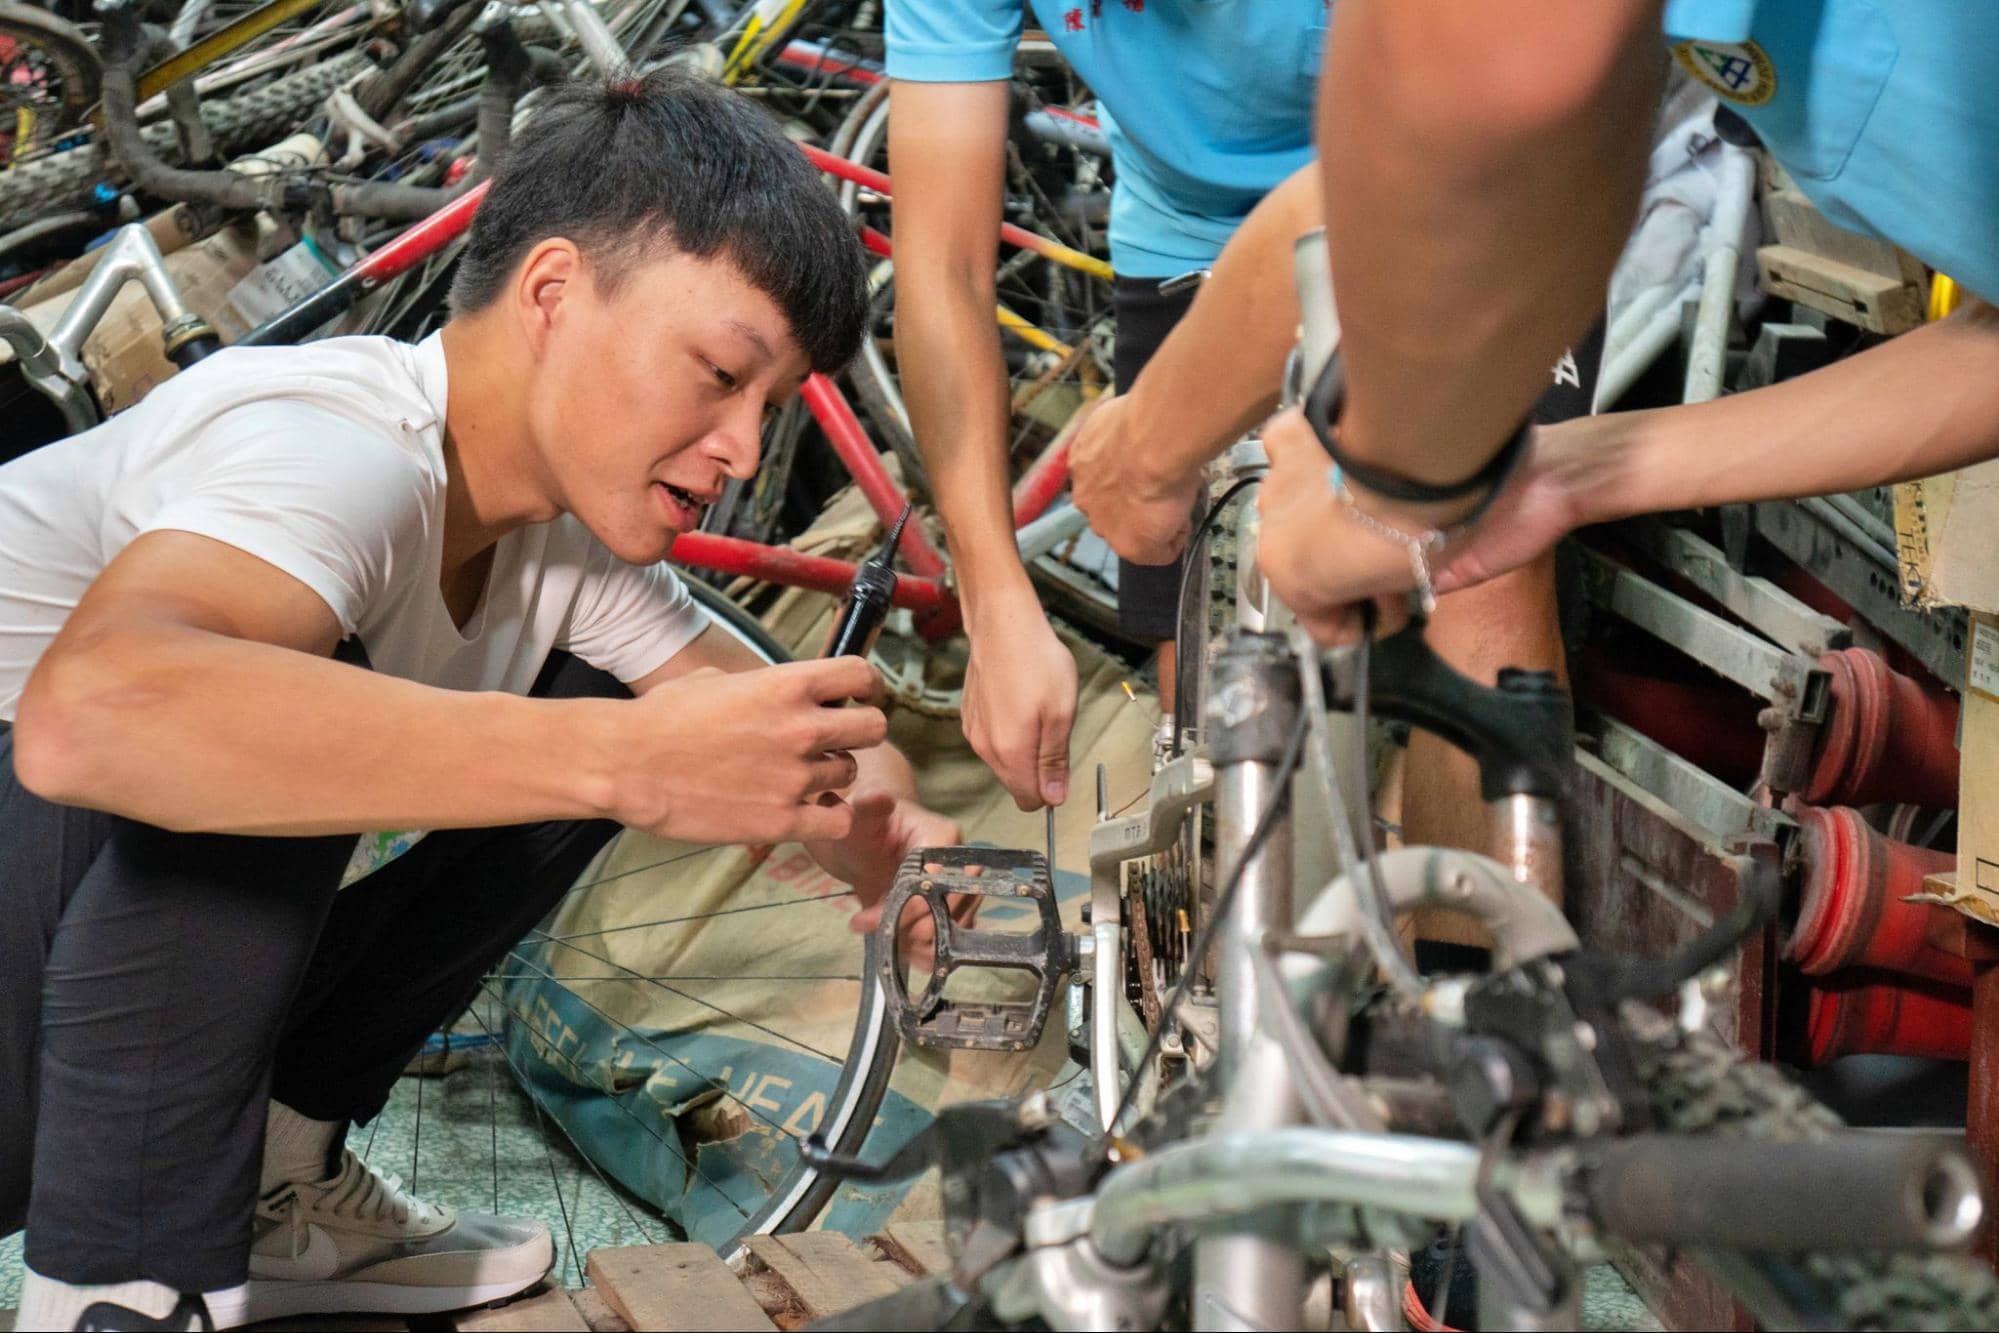 林園校友團團員陳暐親手示範拆解老舊零件時需要使用的工具及技巧。